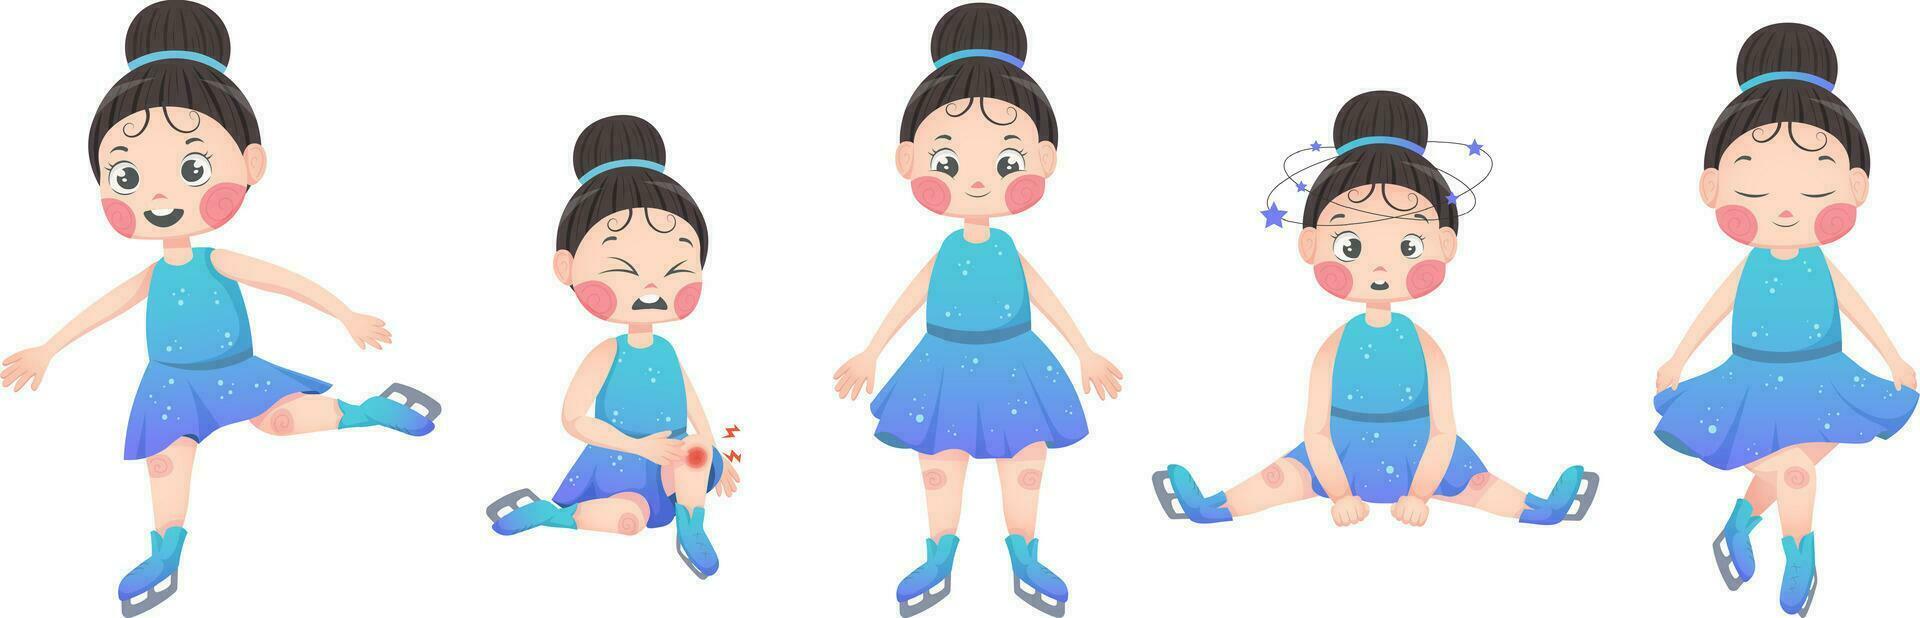 dibujos animados niña figura patinador en un deportivo azul vestir con lentejuelas en diferente posa emociones y sensaciones, dolor, alegría, sensibilidad, mareo, saludo. vector ilustración